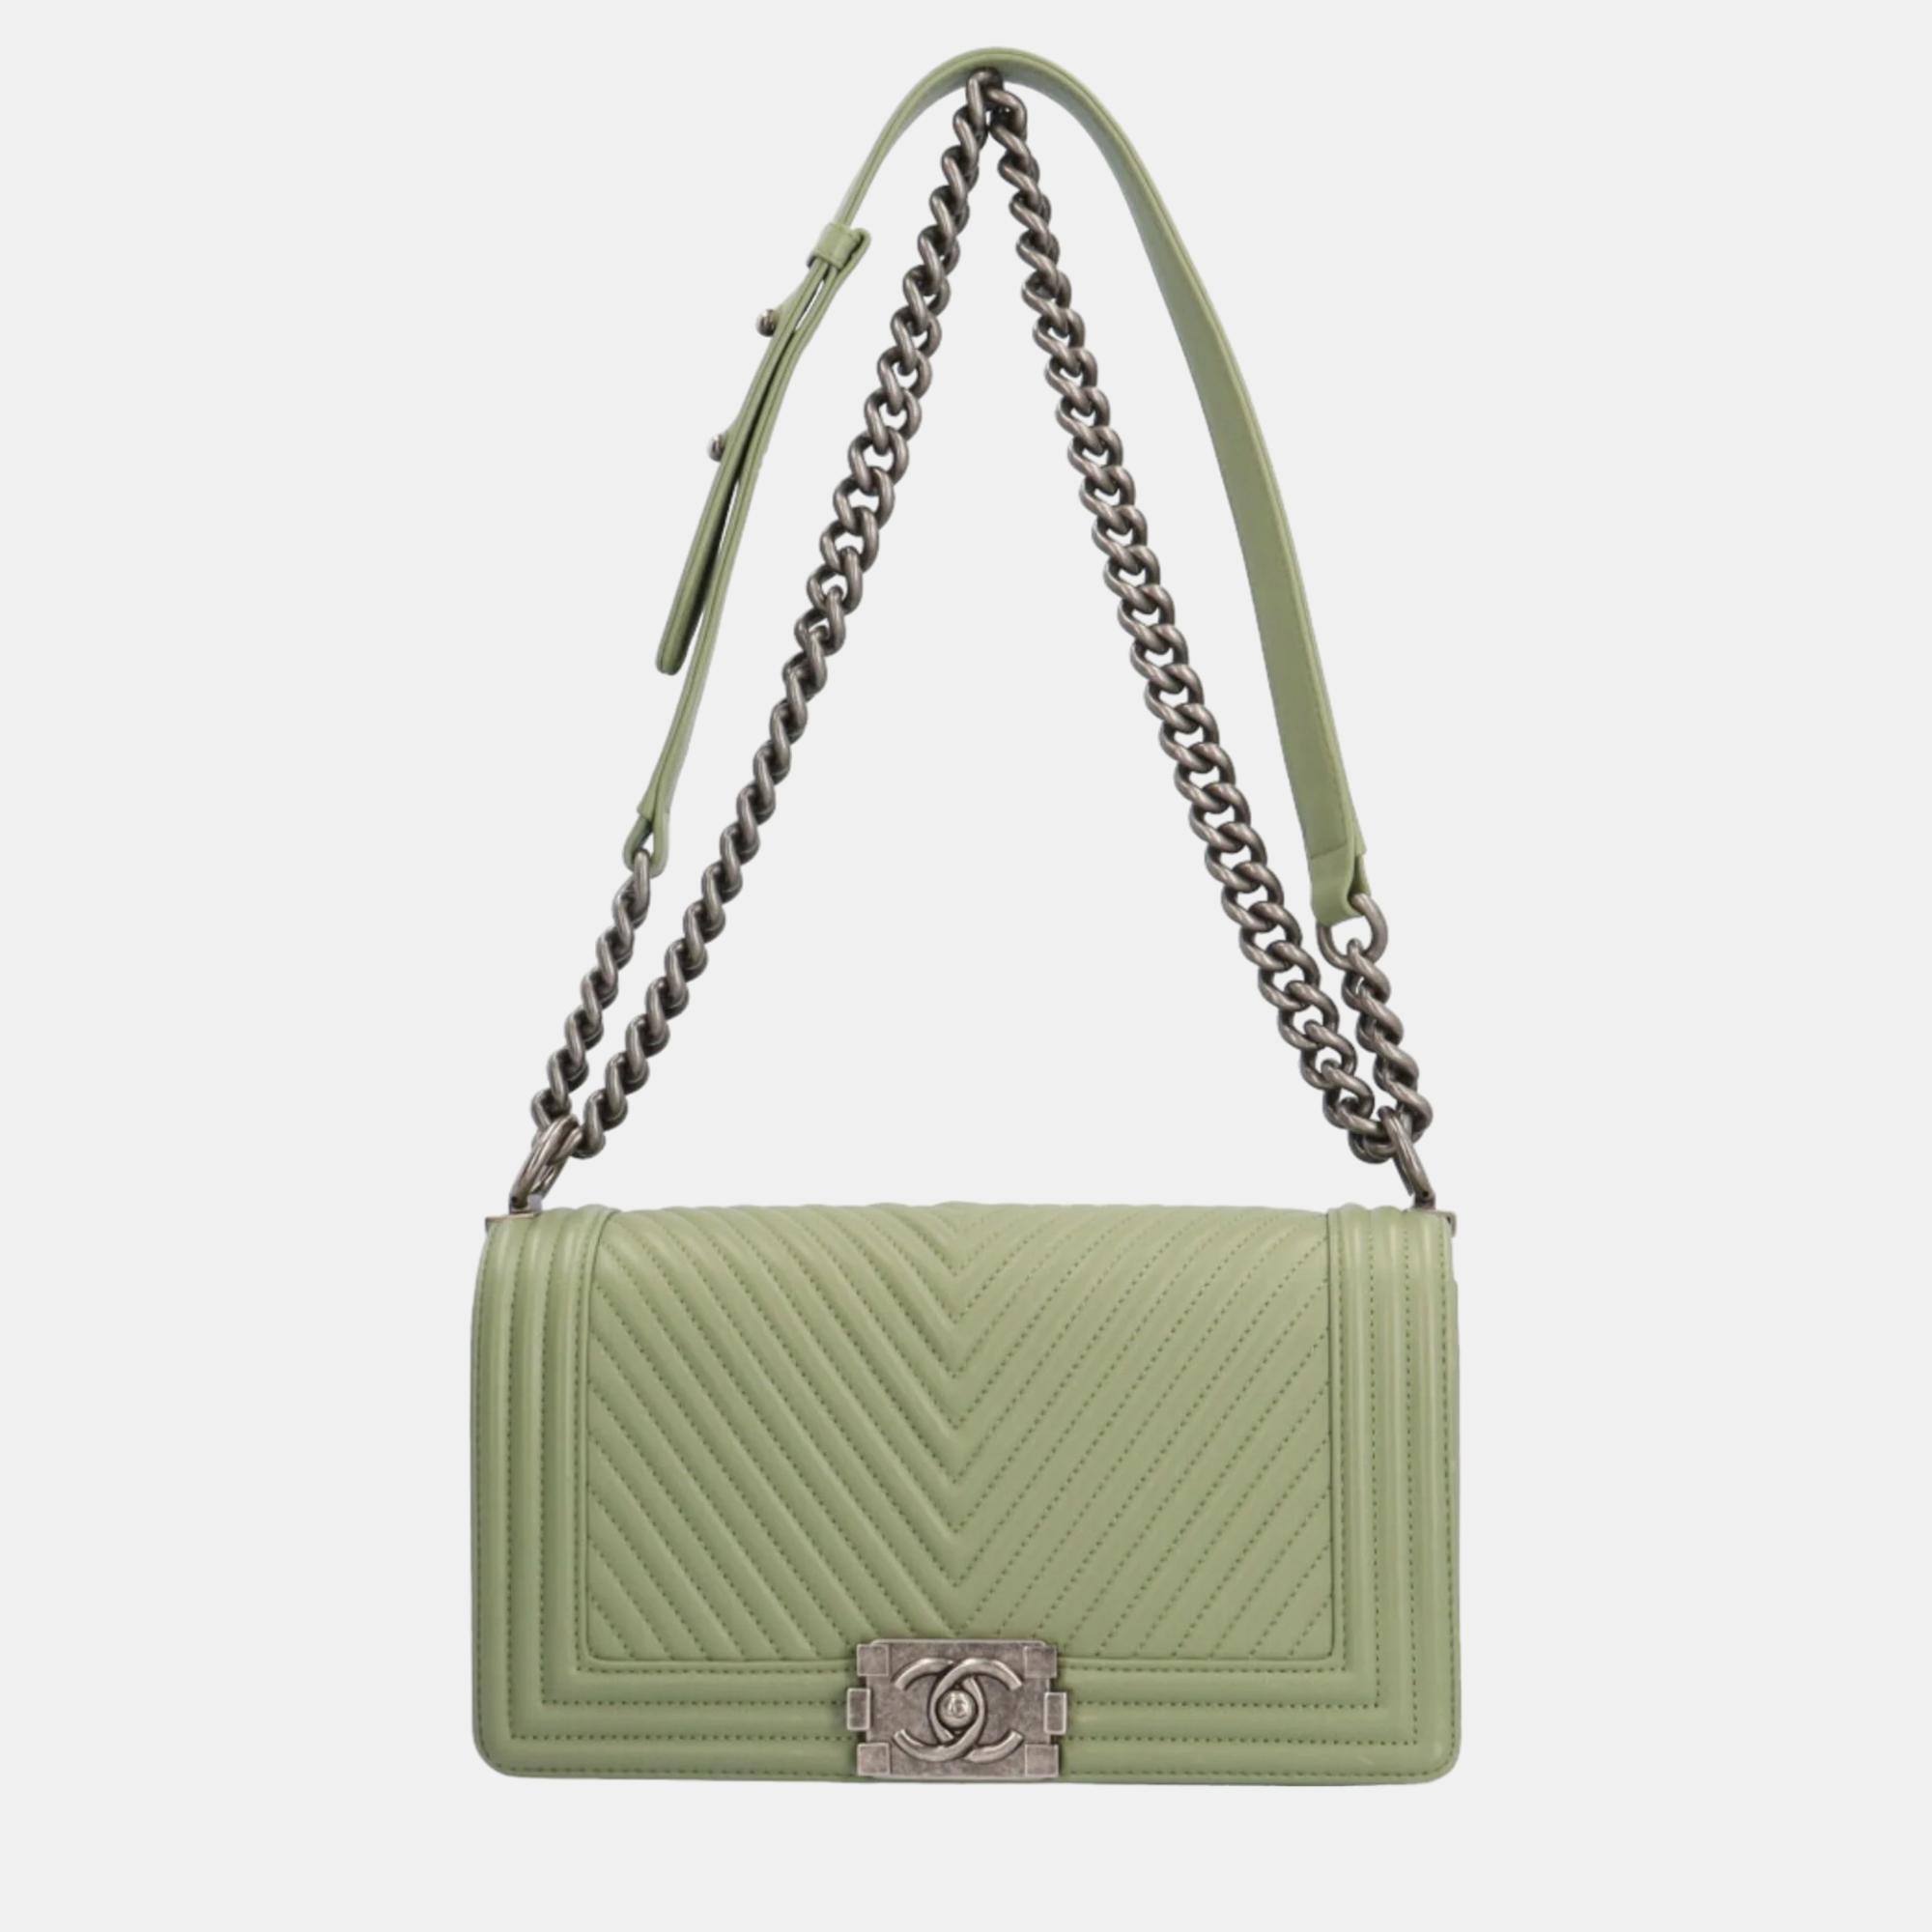 Chanel green chevron leather medium boy flap bag